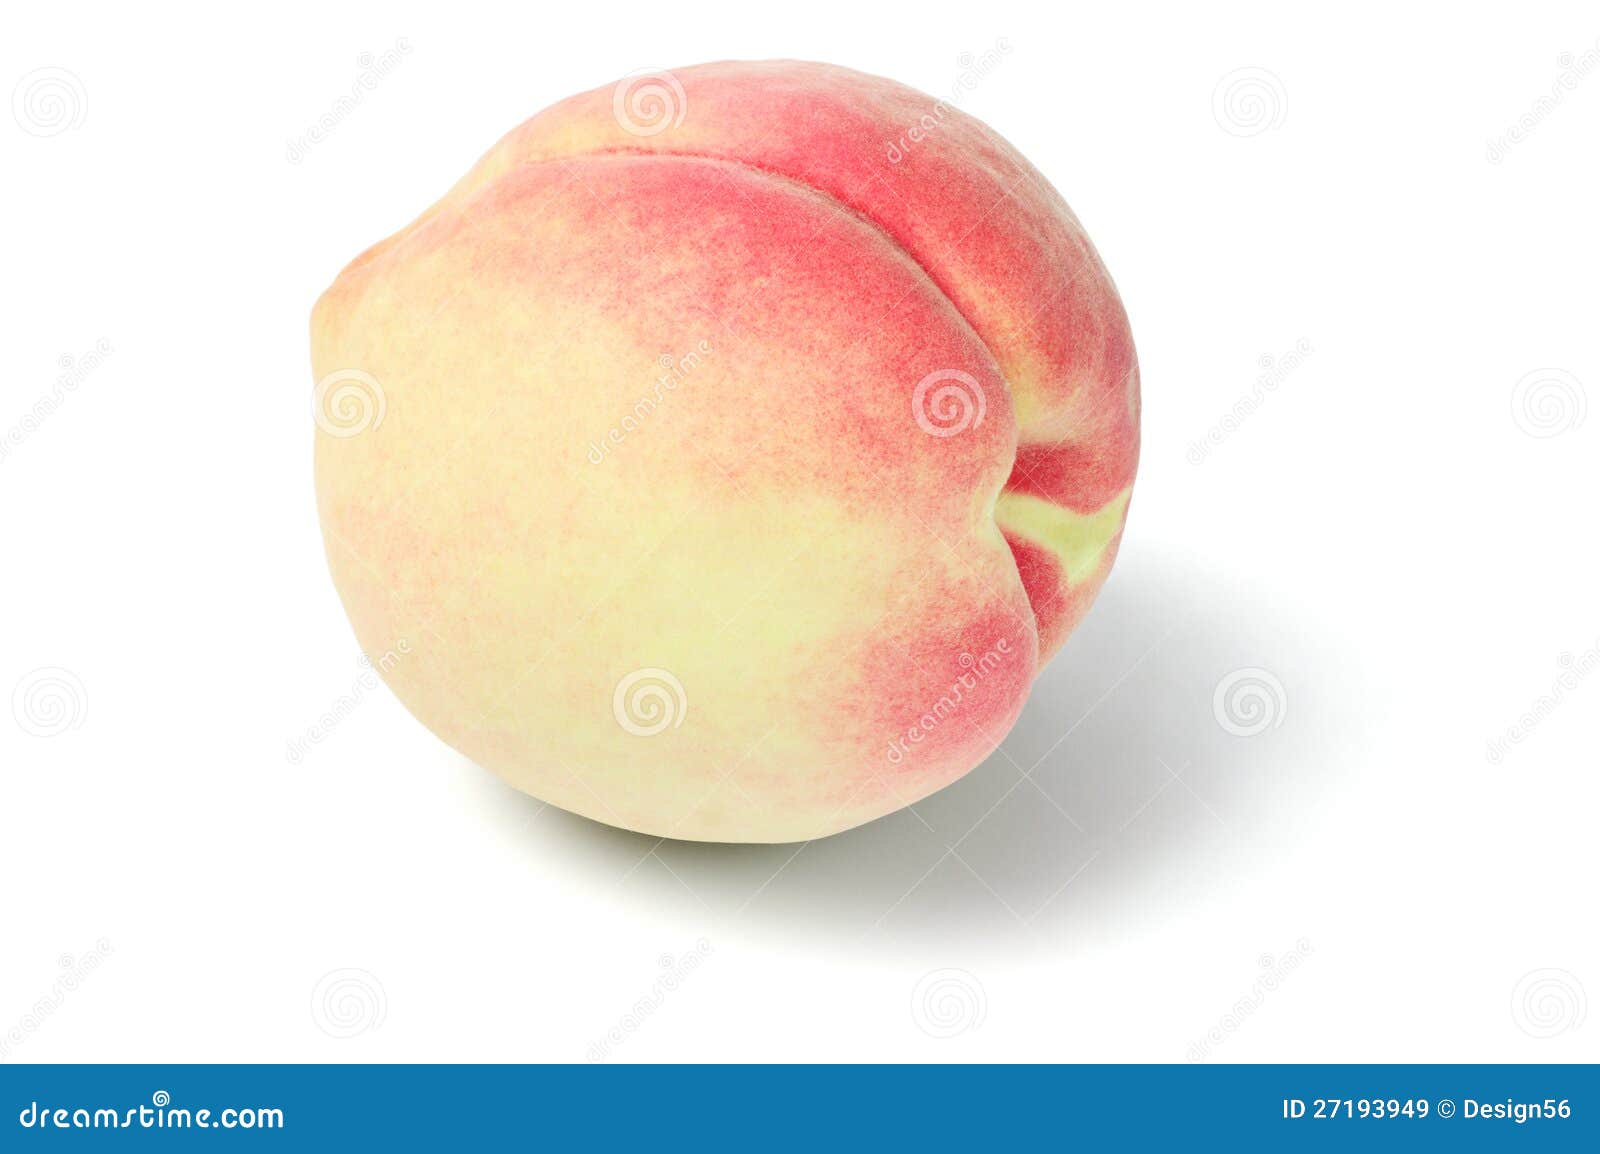 fresh peach fruit